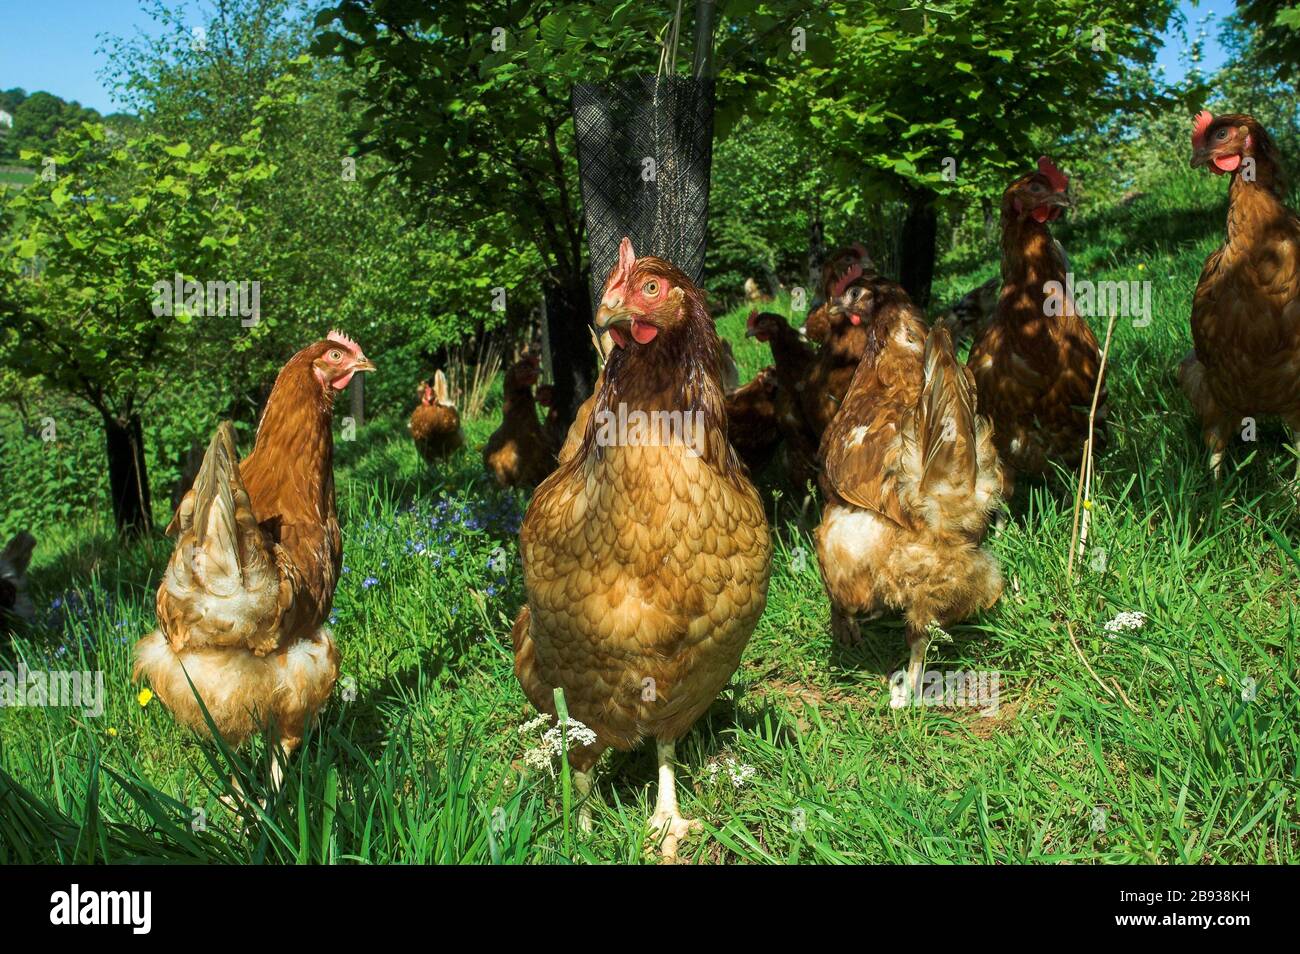 Les poules de la gamme libre se baladent dans des bois ombragés. Cumbria, Royaume-Uni. Banque D'Images